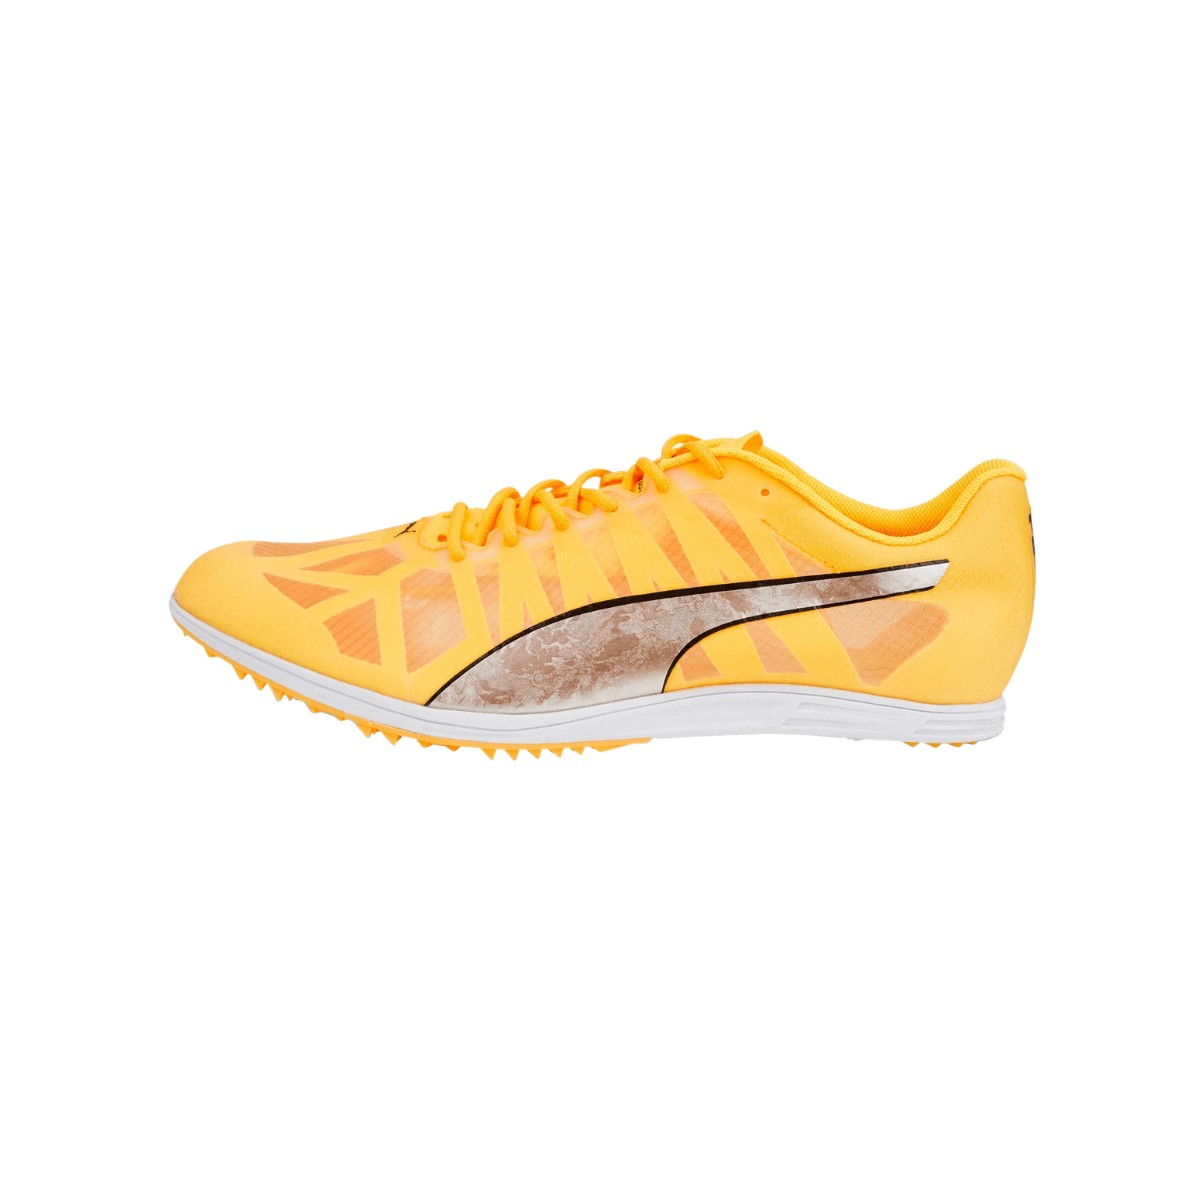 puma chaussures evospeed distance 10 jaune, taille 44,5 - eur